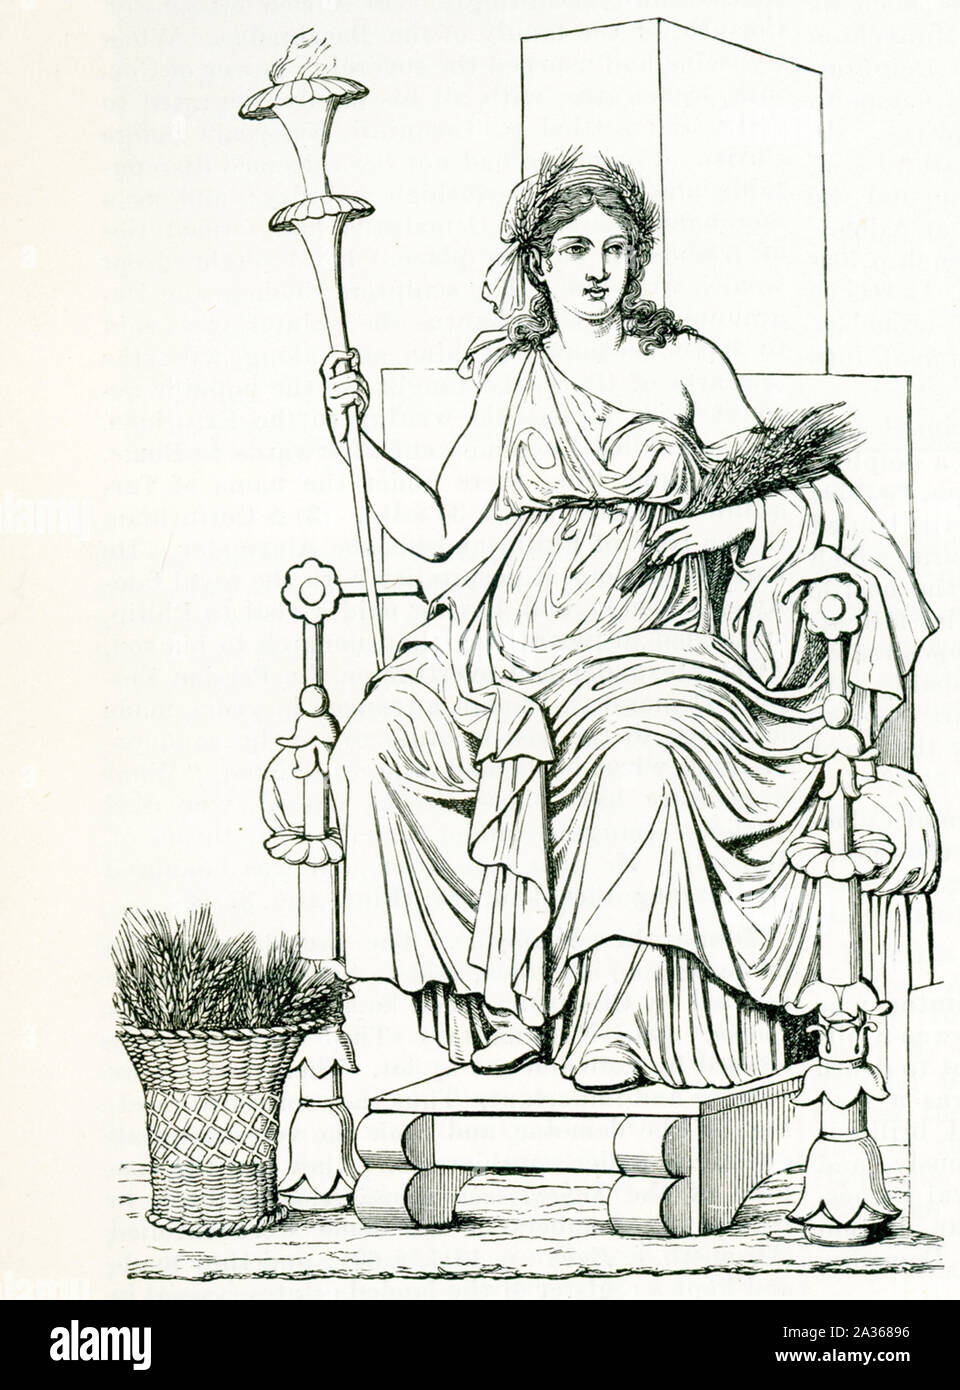 Qui illustrato è la dea greca Demetra, preso da una pittura murale di  Pompei(l'italiano owen distrutta nel 79 D.C. in eruzione del Vesuvio.  Demetra è la Dea del raccolto e presiede i